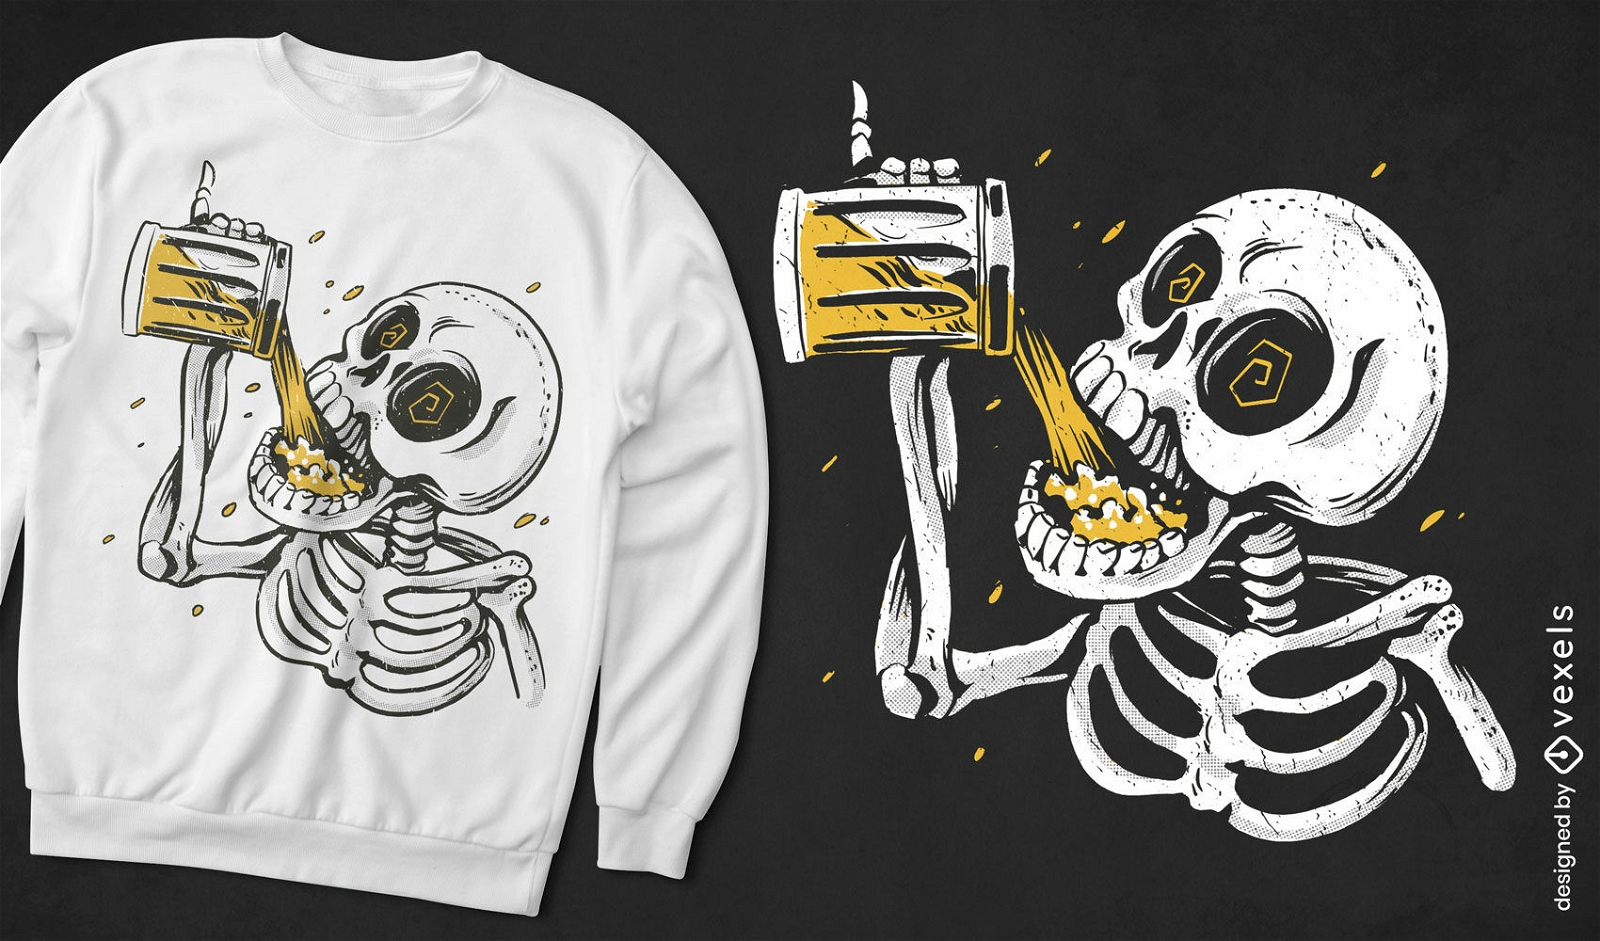 Skeleton drinking beer drink t-shirt design